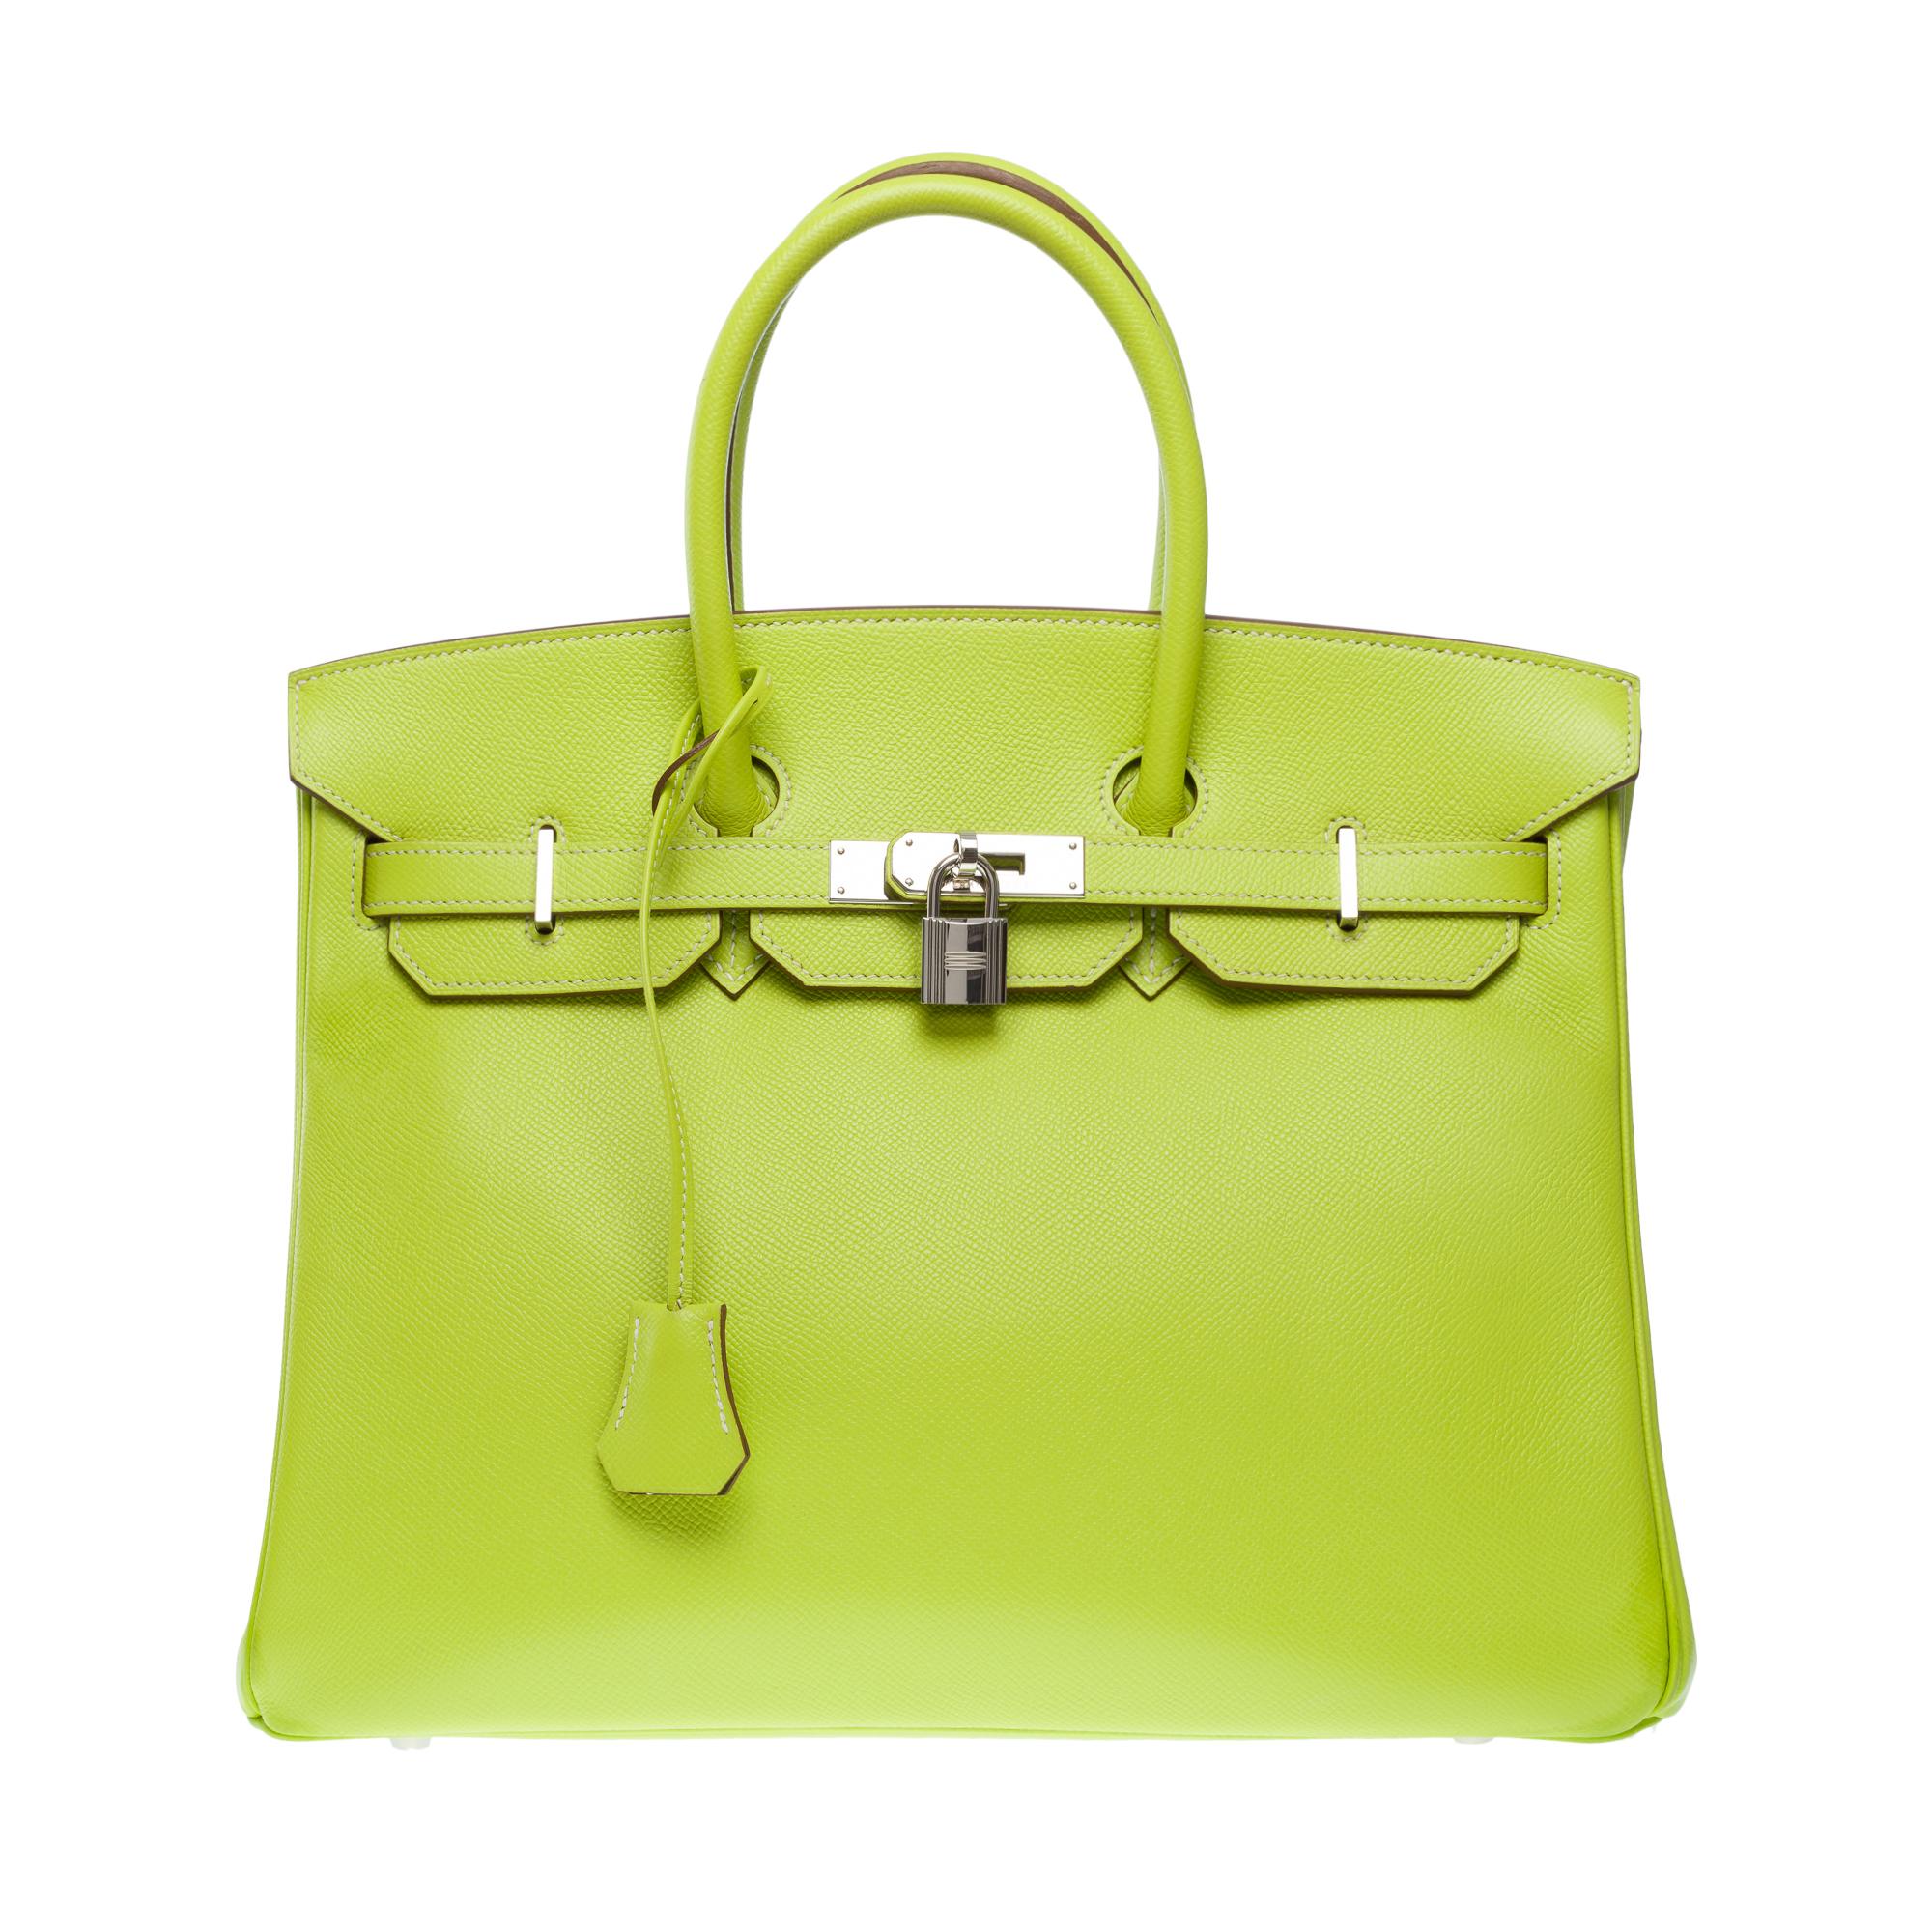 Yellow Candy limited edition Hermès Birkin 35 handbag in Kiwi Green epsom leather, SHW